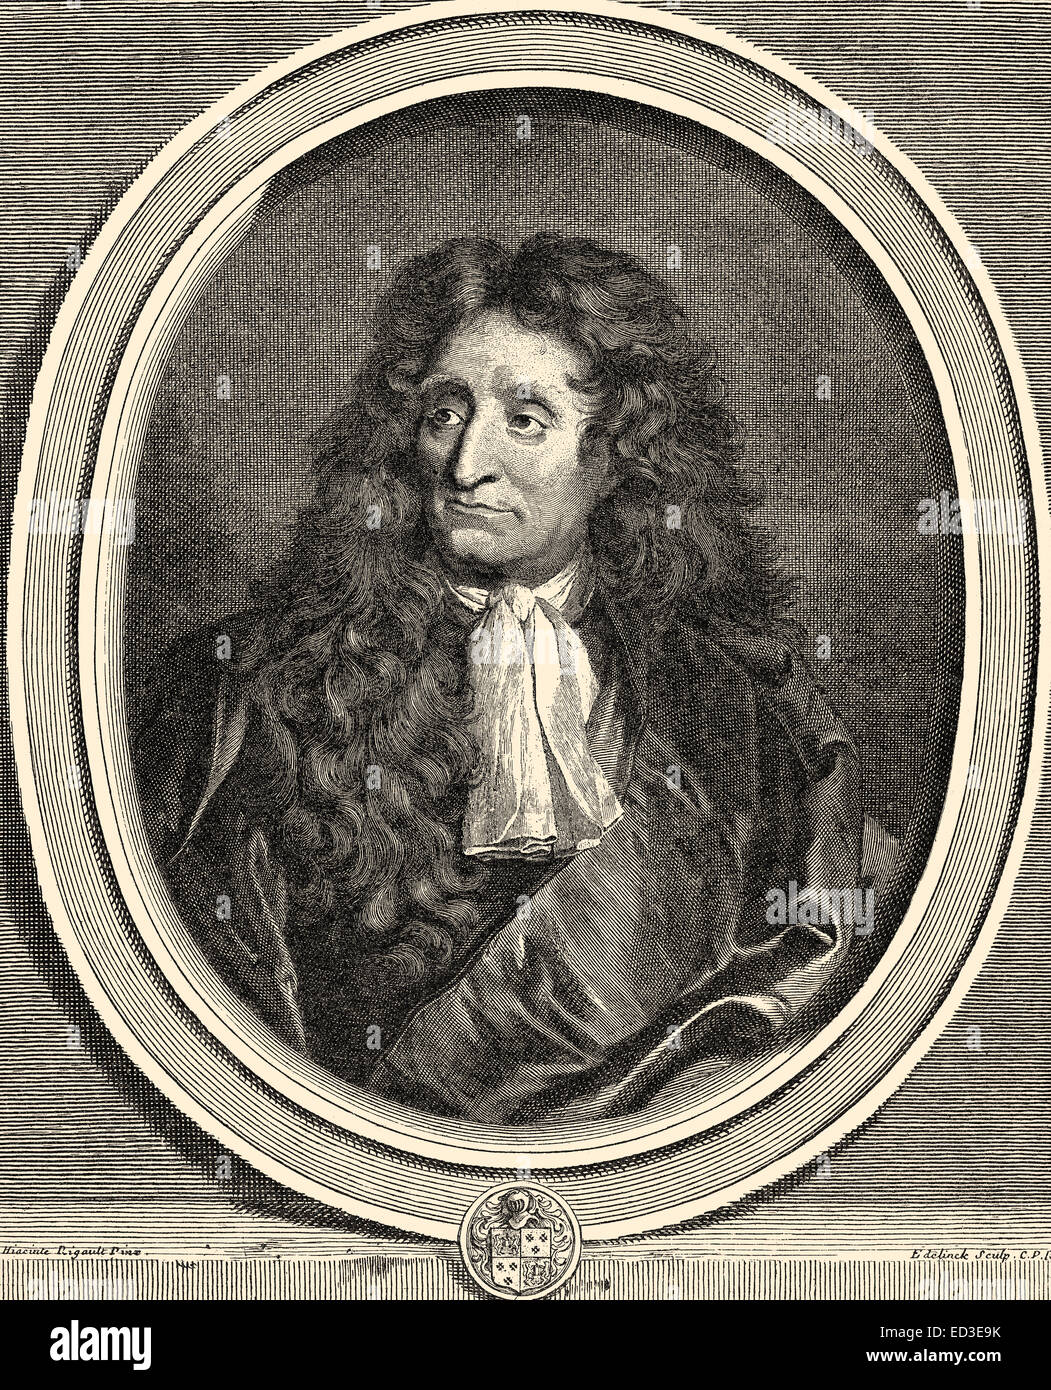 Jean de La Fontaine, 1621 - 1695, a French writer, Portrait von Jean de La Fontaine, 1621 - 1695, ein französischer Schriftstell Stock Photo